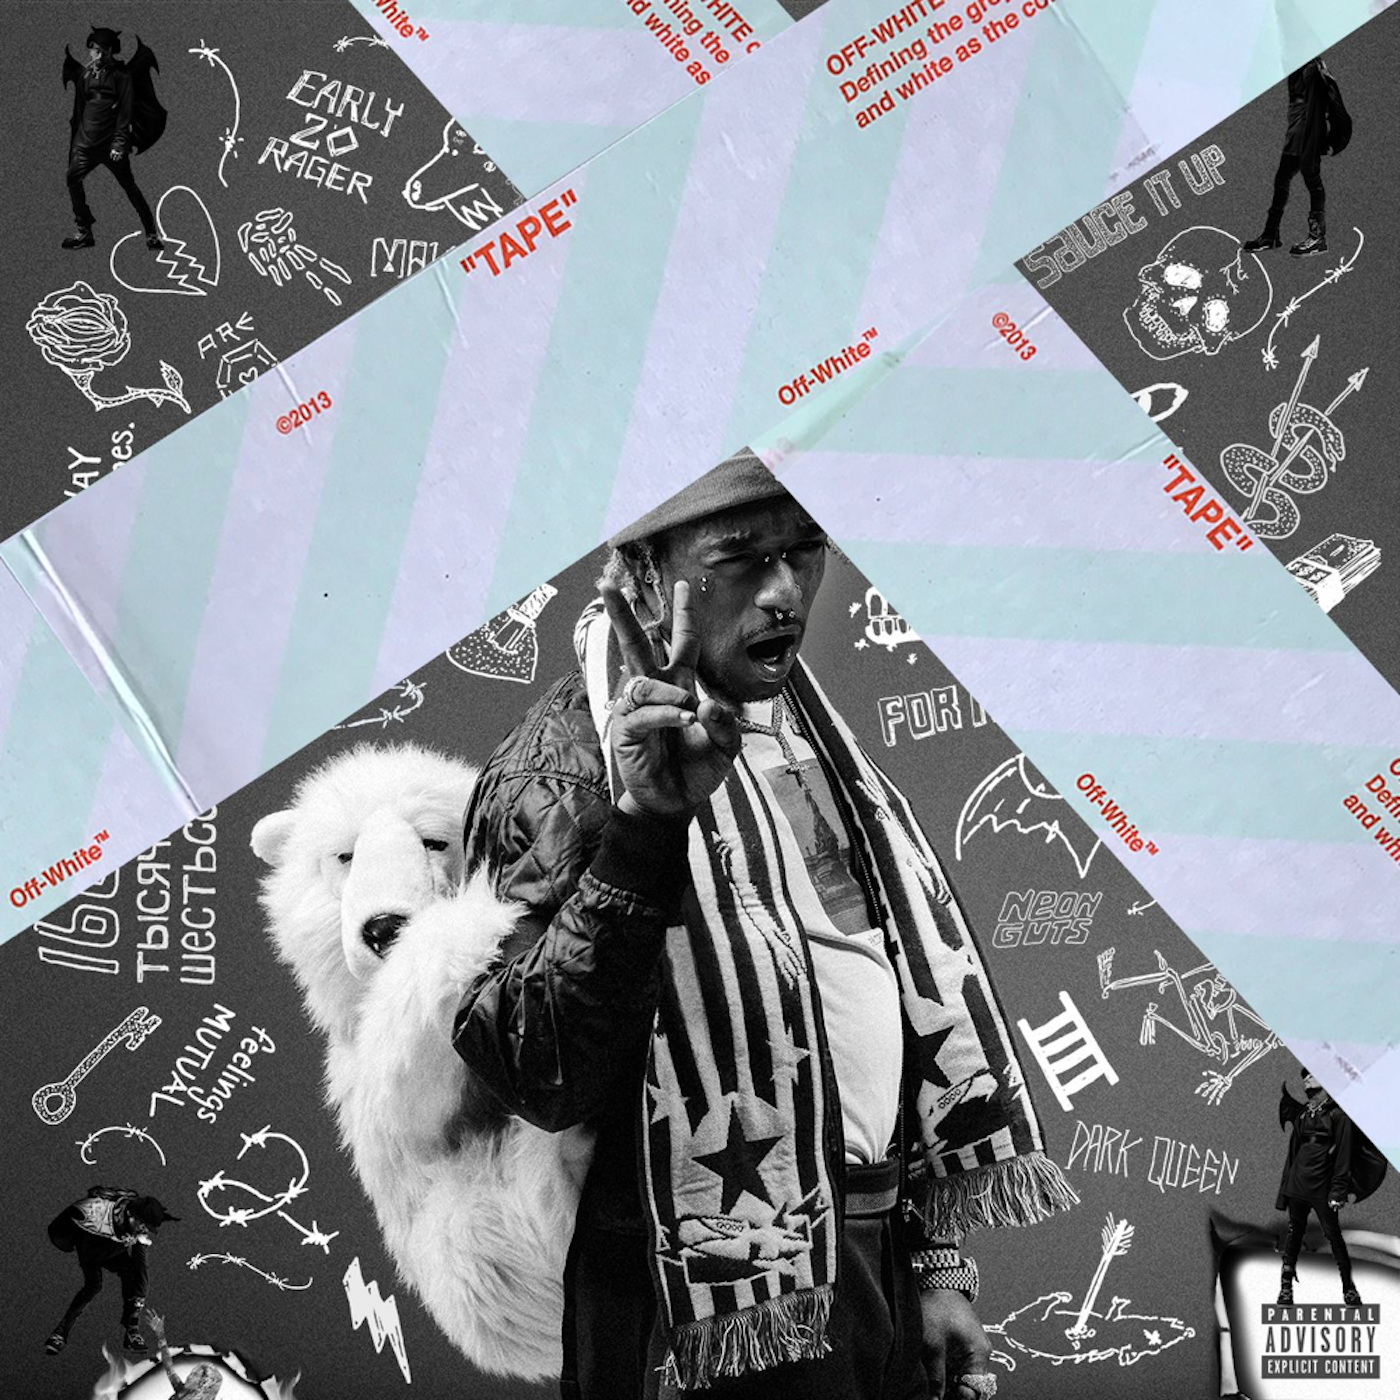 Virgil Abloh's cover art for rapper Pop Smoke's posthumous album